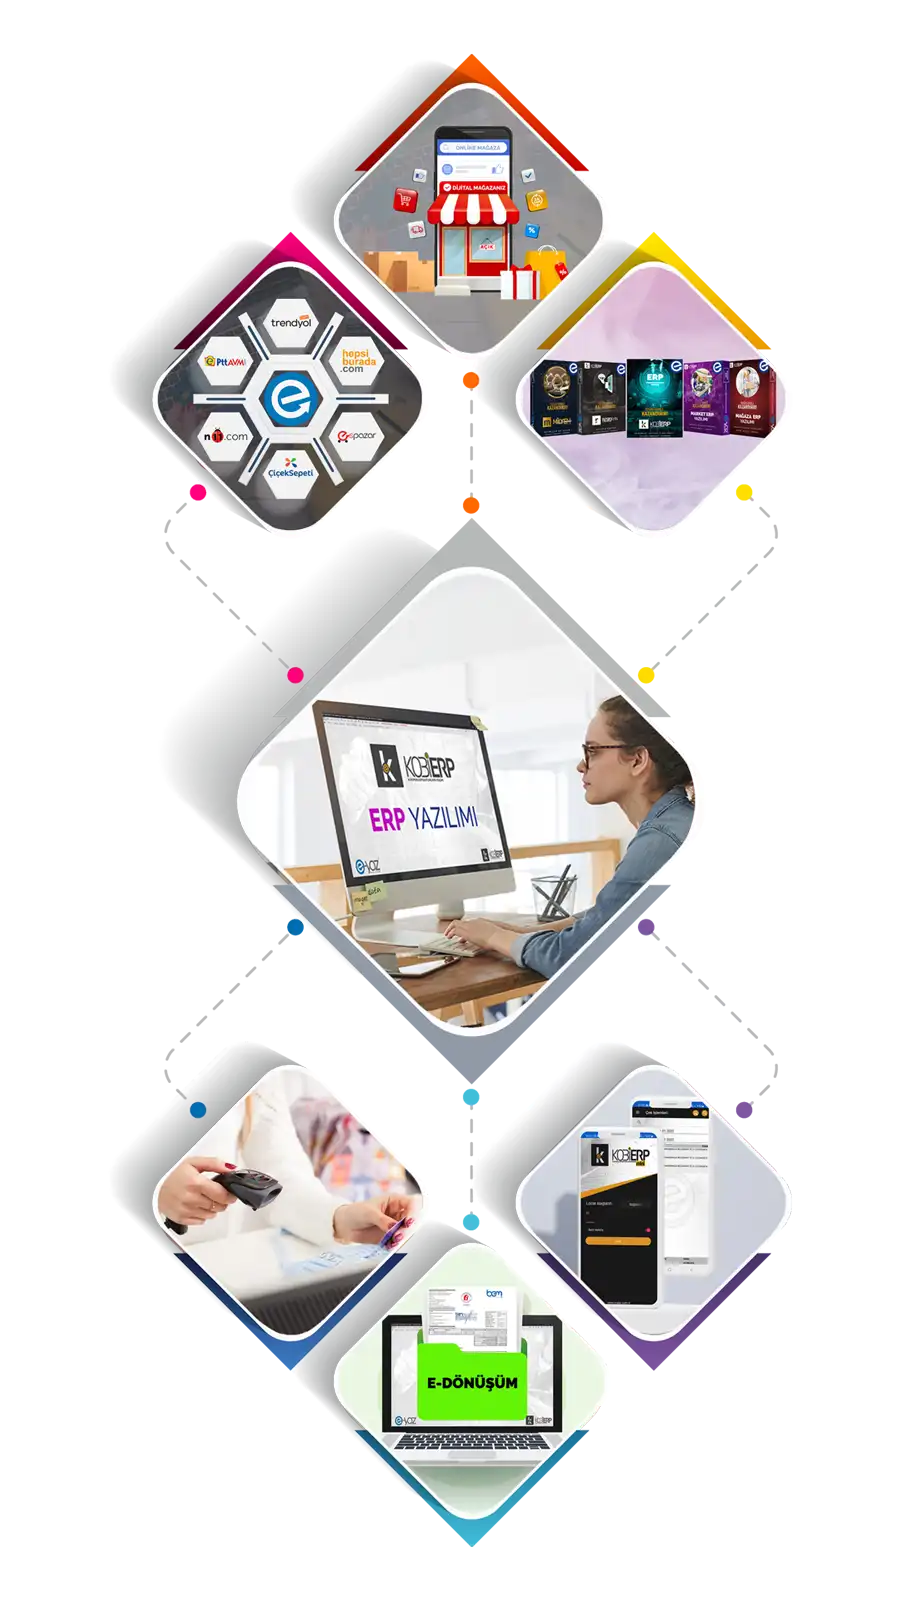 ERP Yazılımı | E-Ticaret | Pazaryeri | Sektörel Yazılımlar | Barkod Sistemi | Mobil Yazılım | E-Dönüşüm | KOBİERP | E-Yaz Yazılım